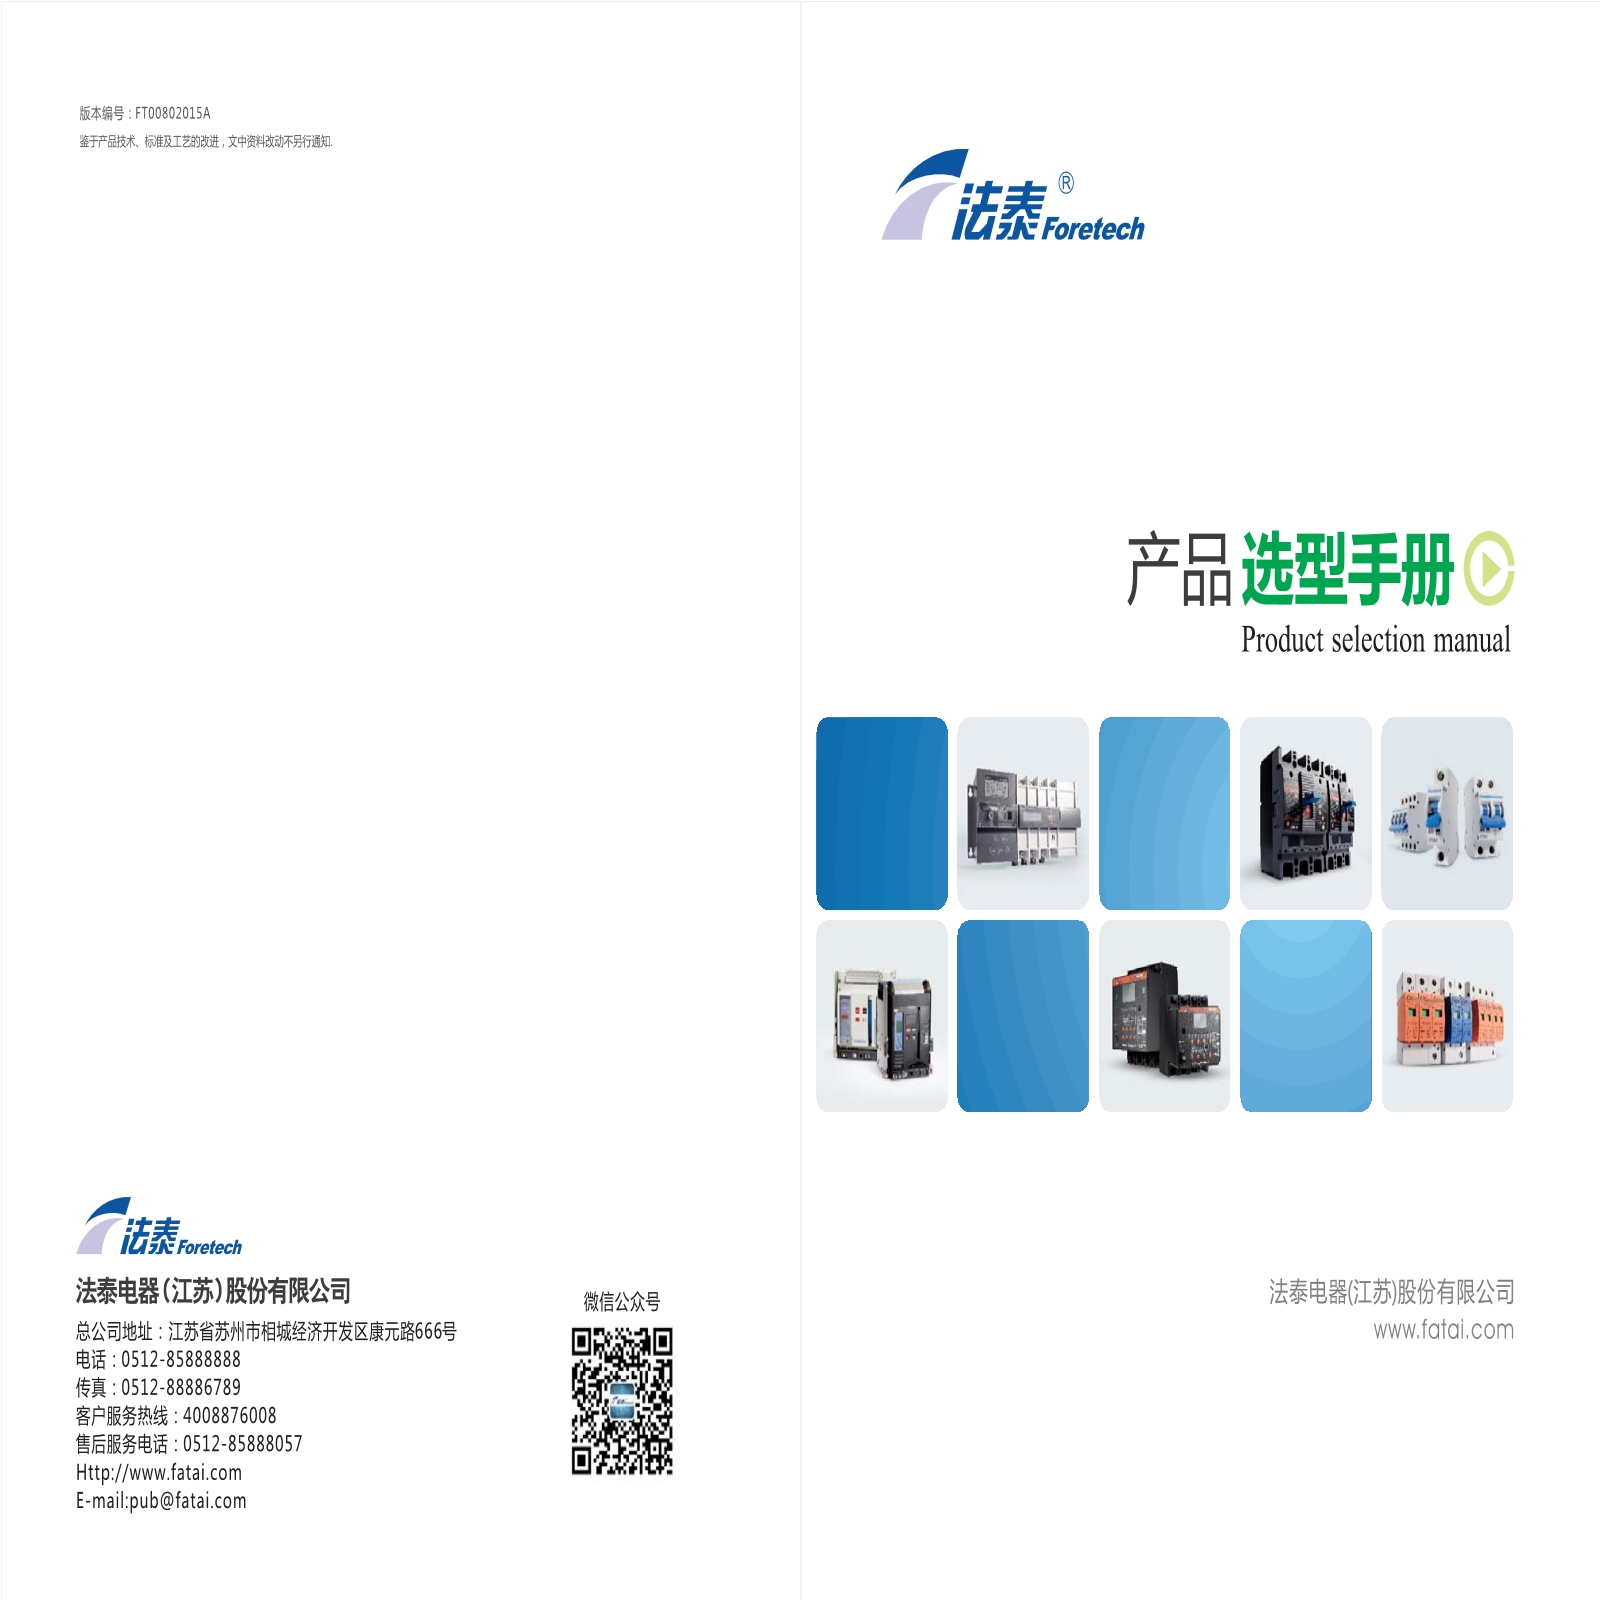 法泰电器产品选型手册